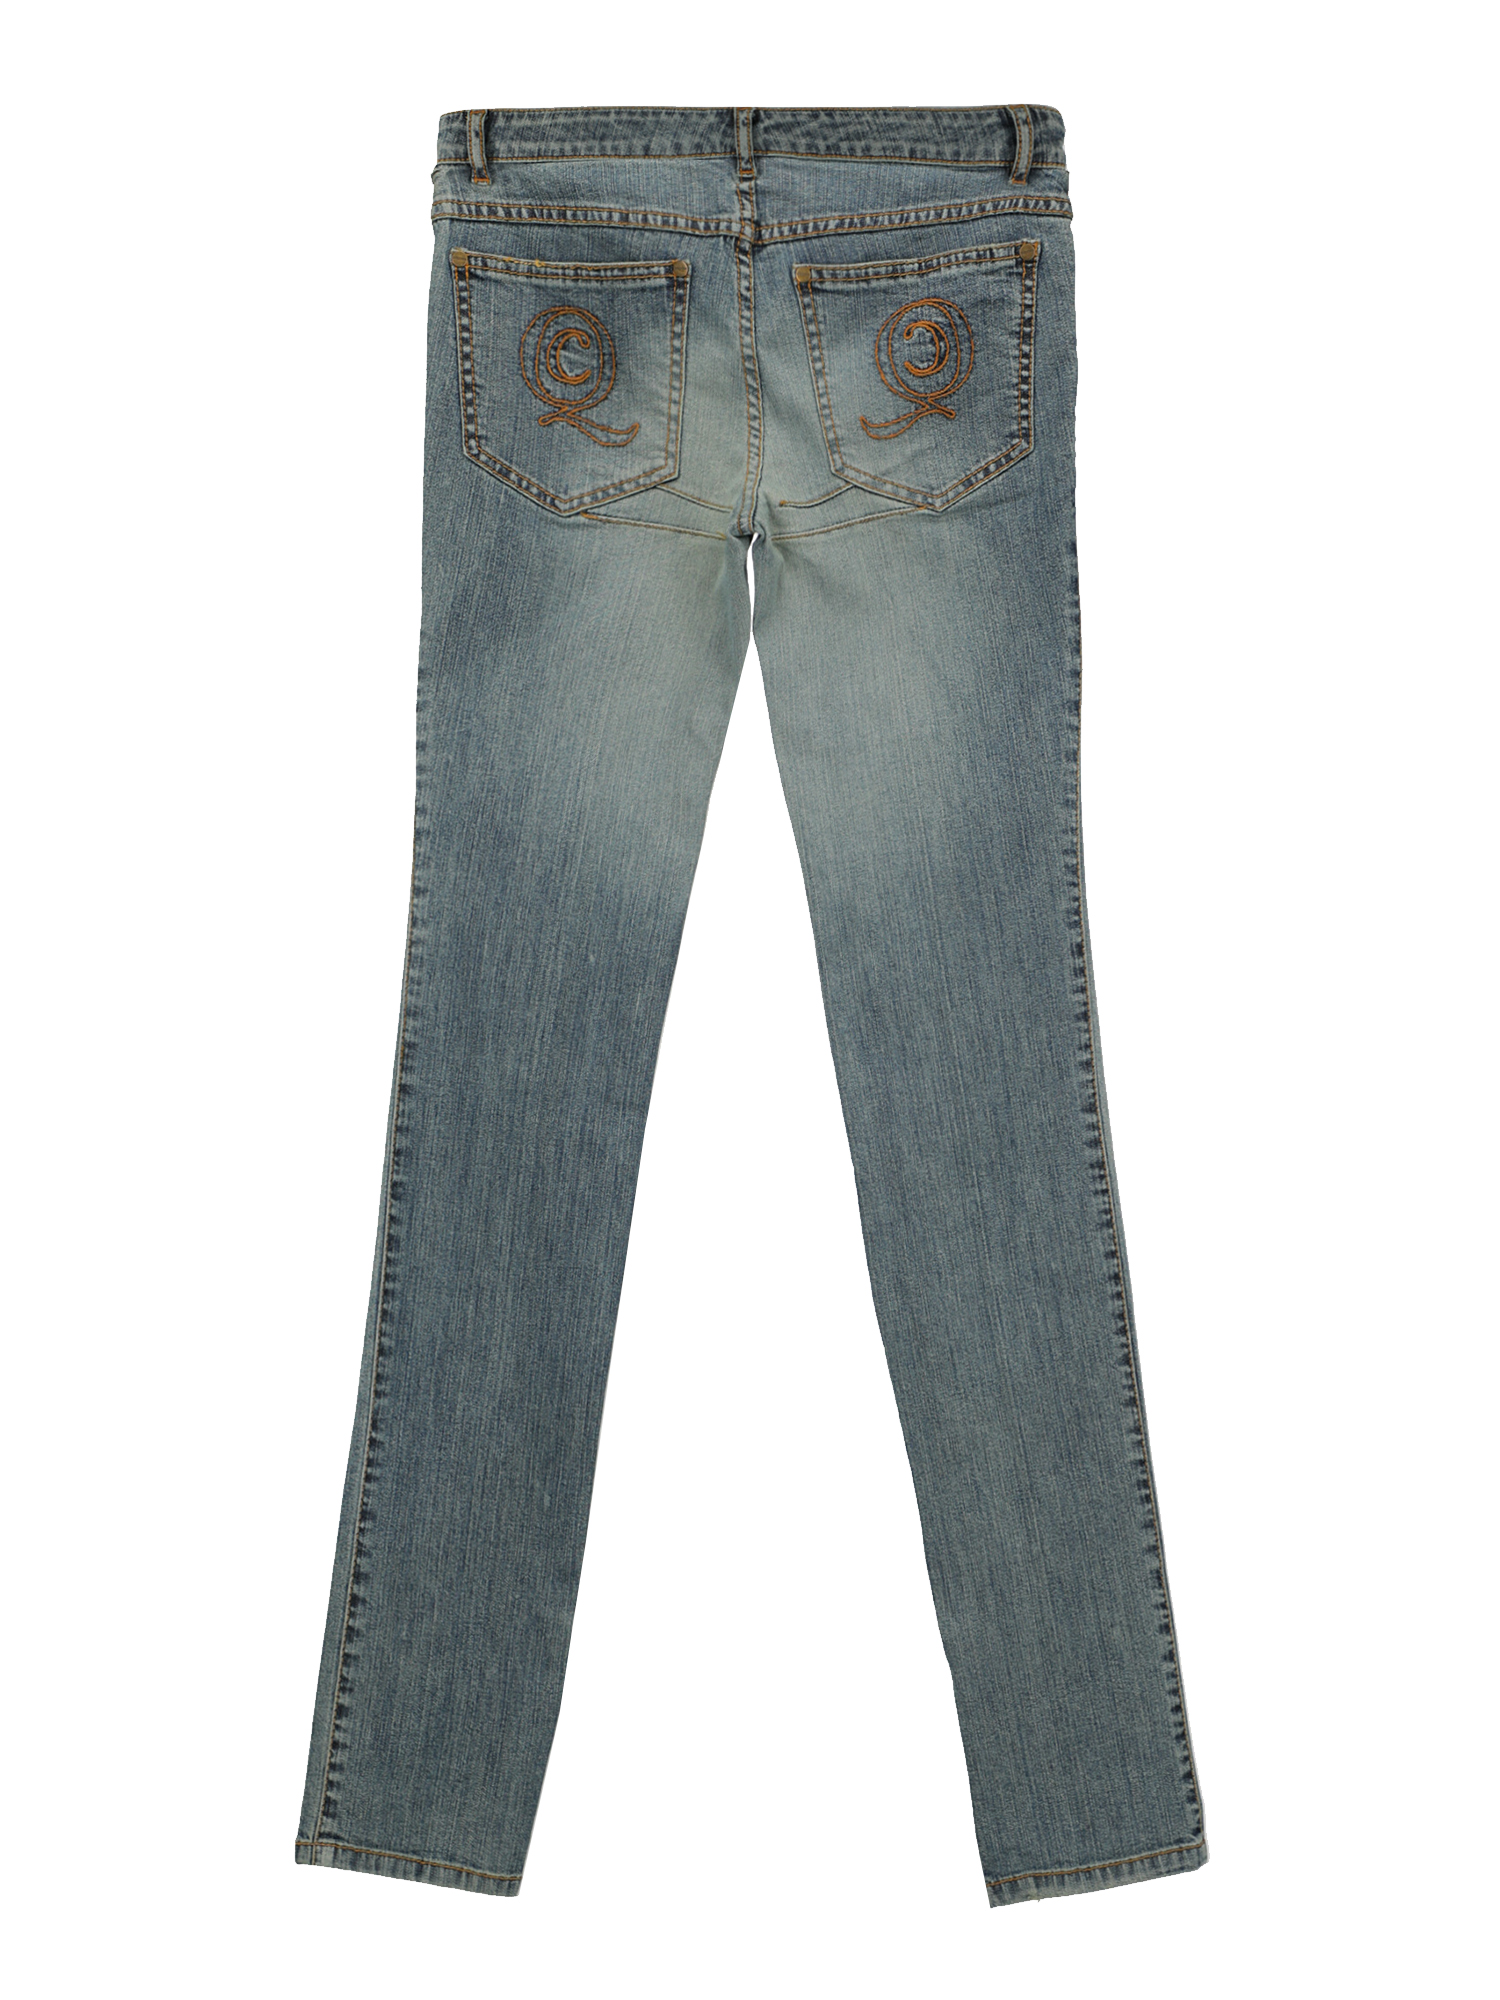 Alexander Mcqueen Special Price Women Jeans Navy IT 38 | eBay